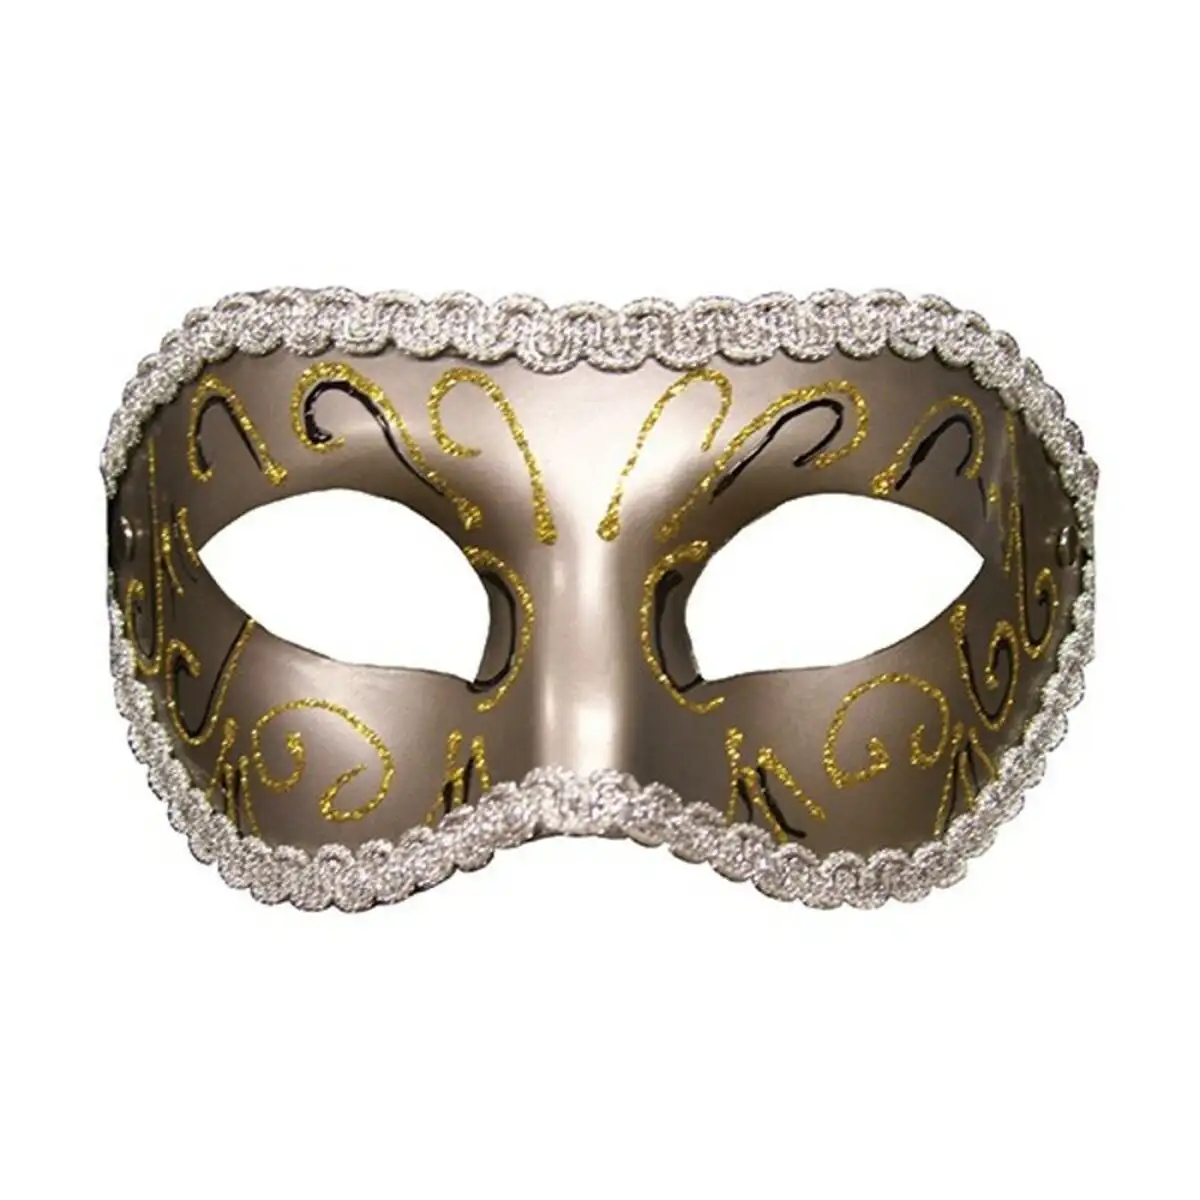 Masque masquerade gris sex mischief ss10081_5970. DIAYTAR SENEGAL - Où Choisir Devient une Découverte. Explorez notre boutique en ligne et trouvez des articles qui vous surprennent et vous ravissent à chaque clic.